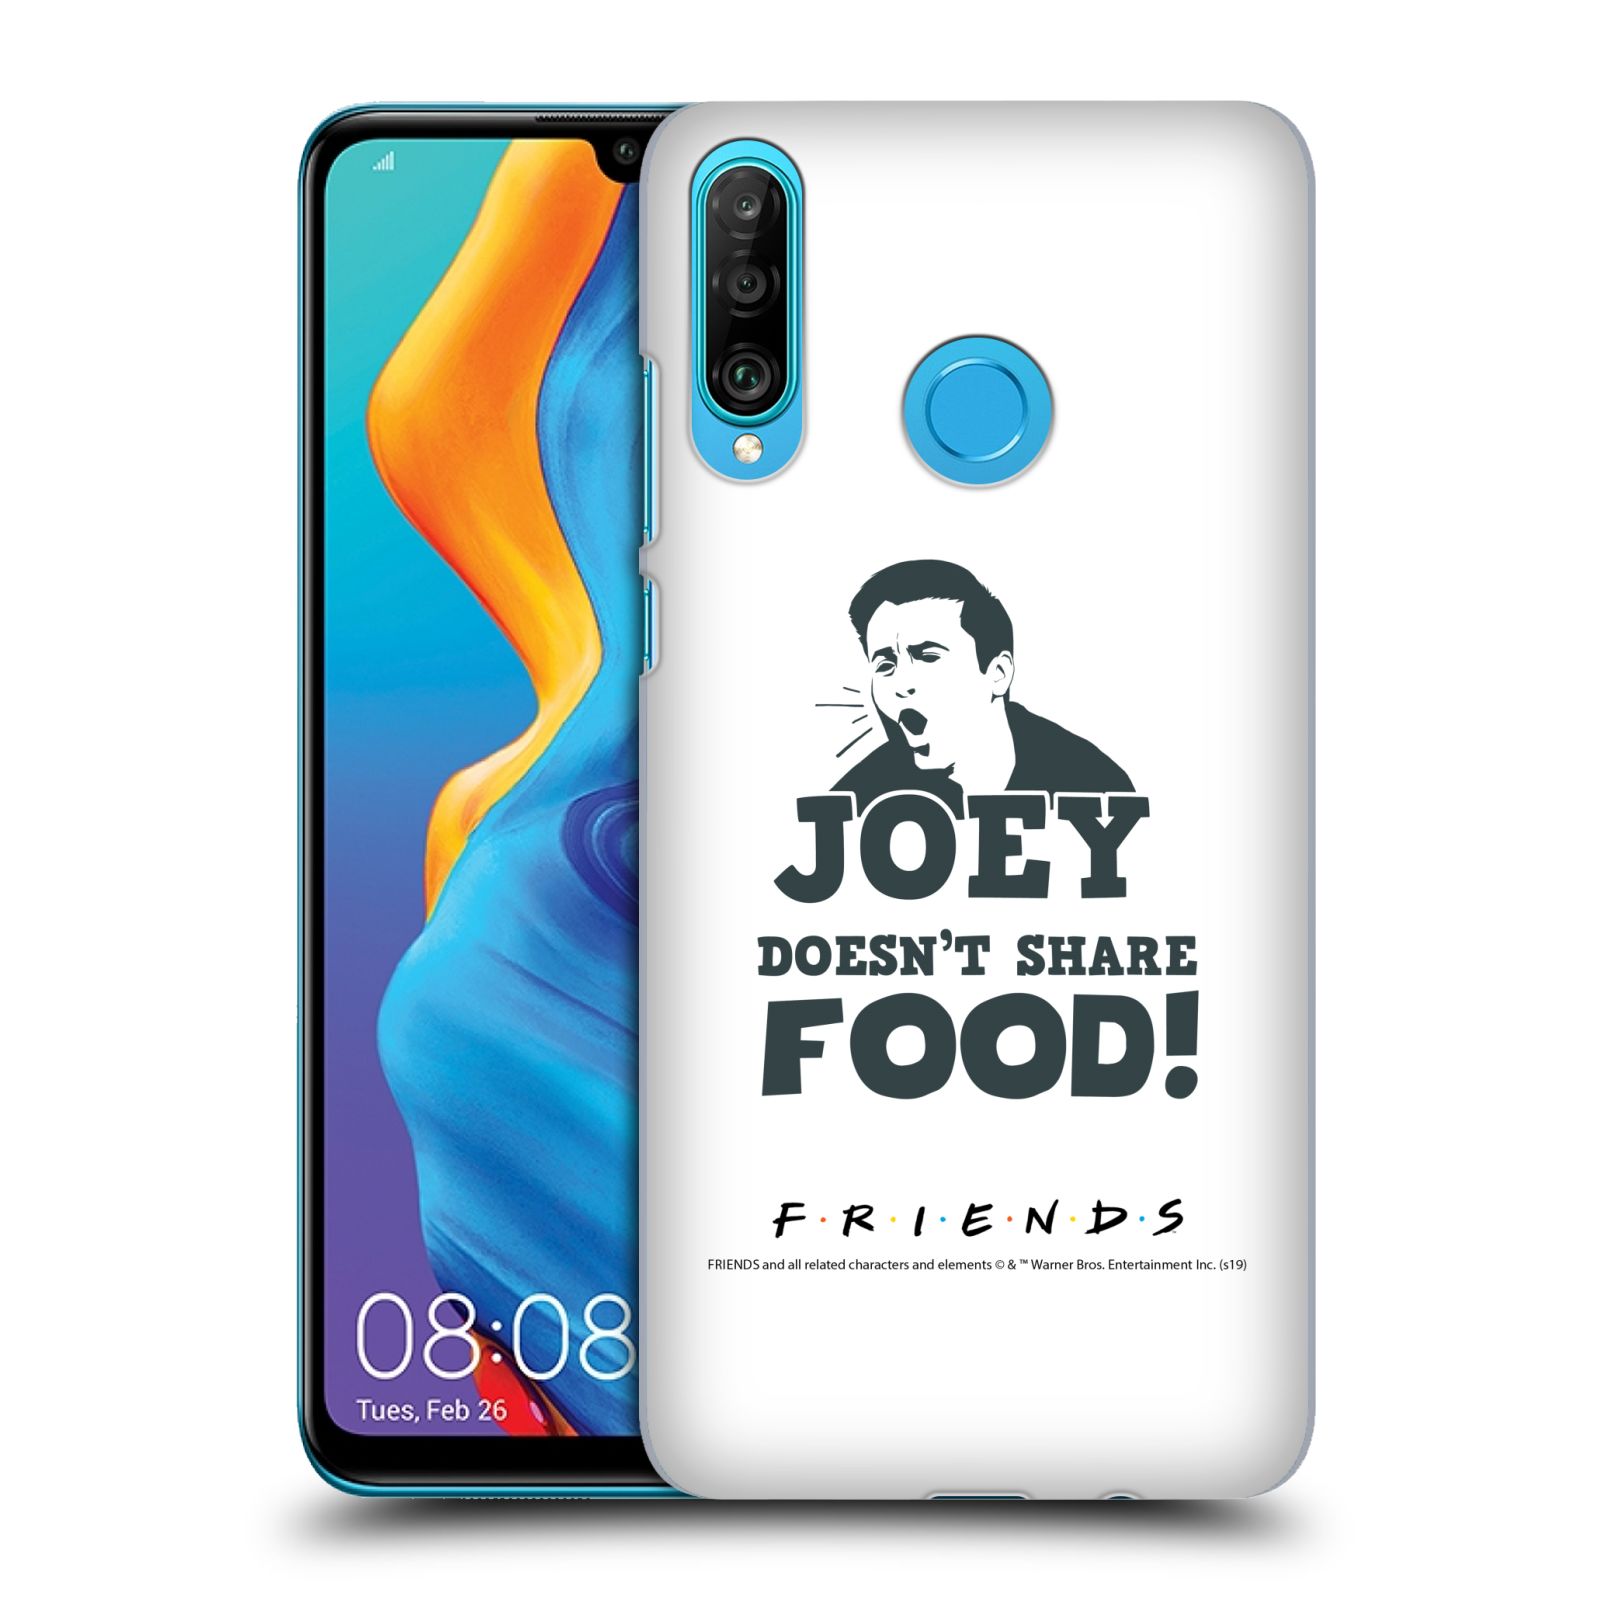 Pouzdro na mobil Huawei P30 LITE - HEAD CASE - Seriál Přátelé - Joey se o jídlo nedělí